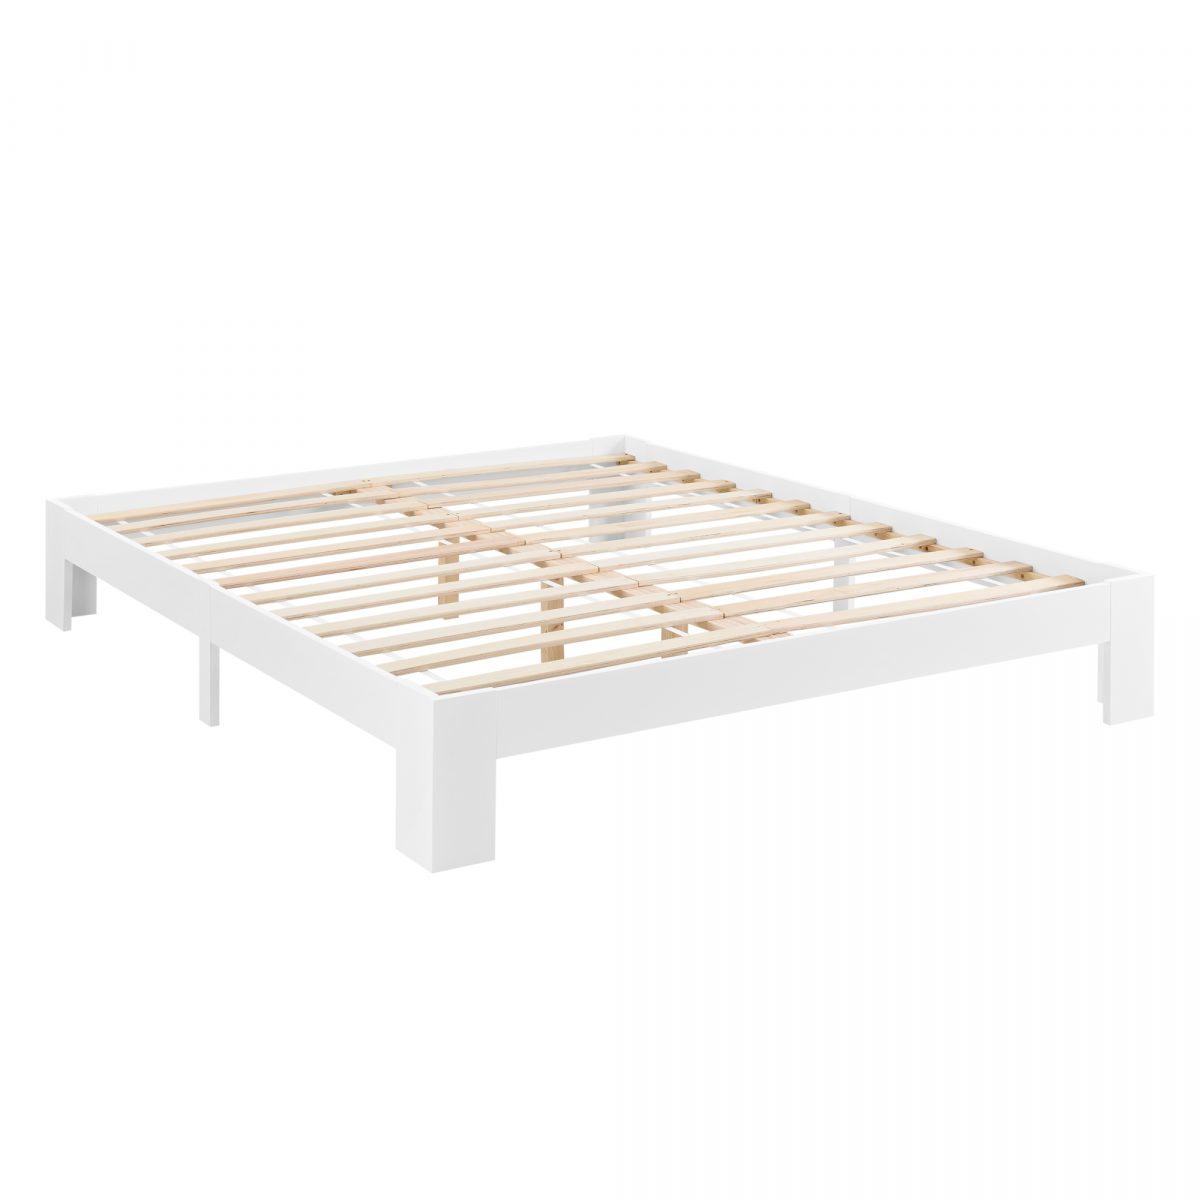 Двуспальная деревянная кровать без спинки